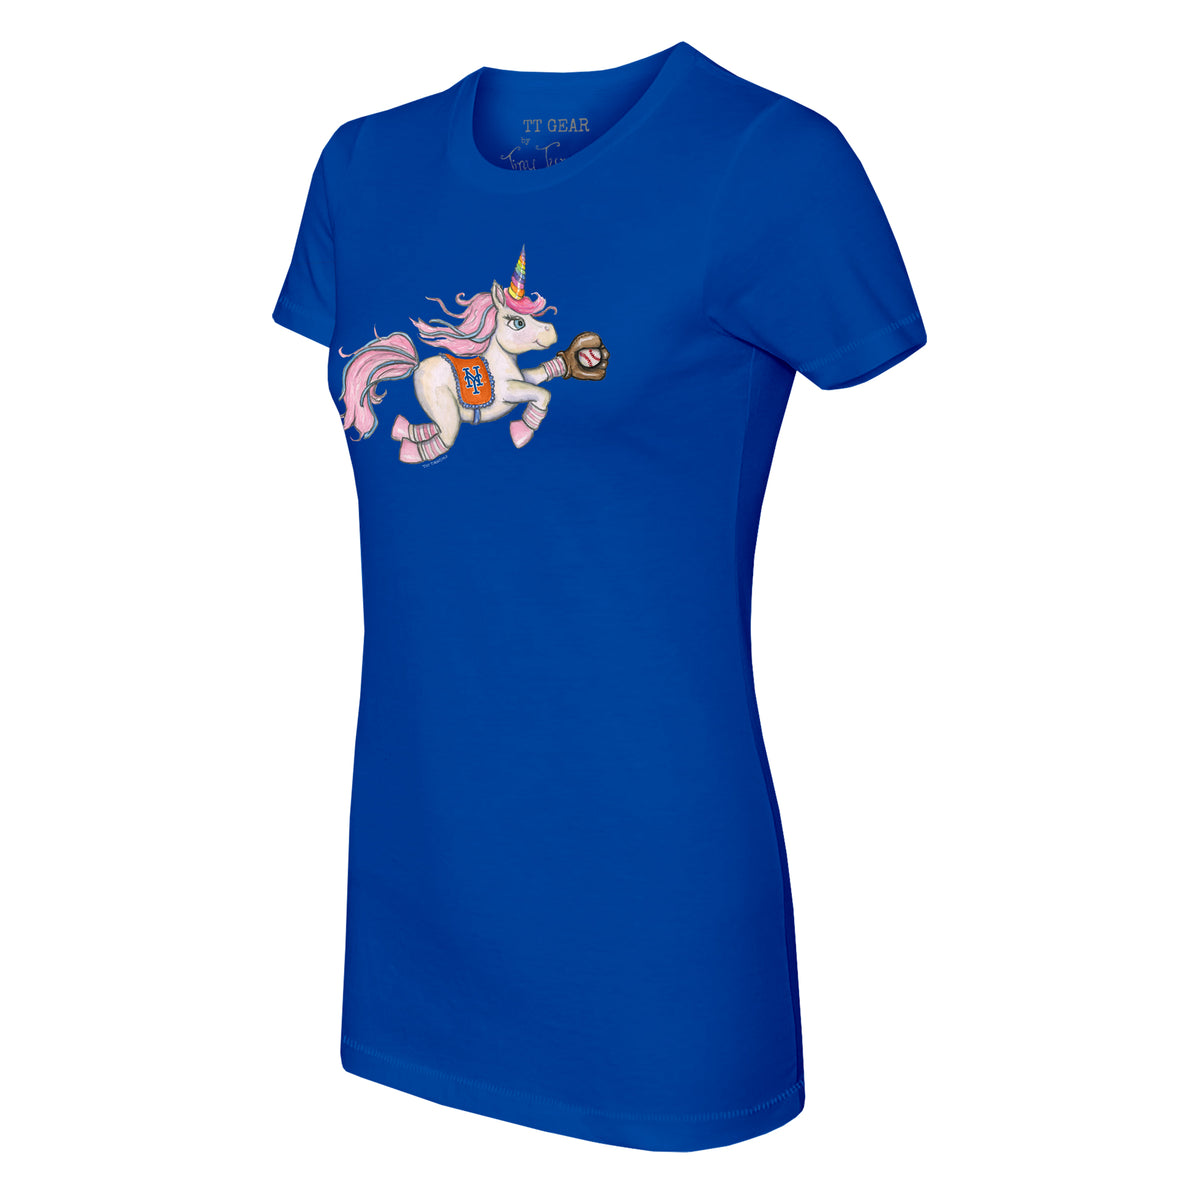 New York Mets Unicorn Tee Shirt